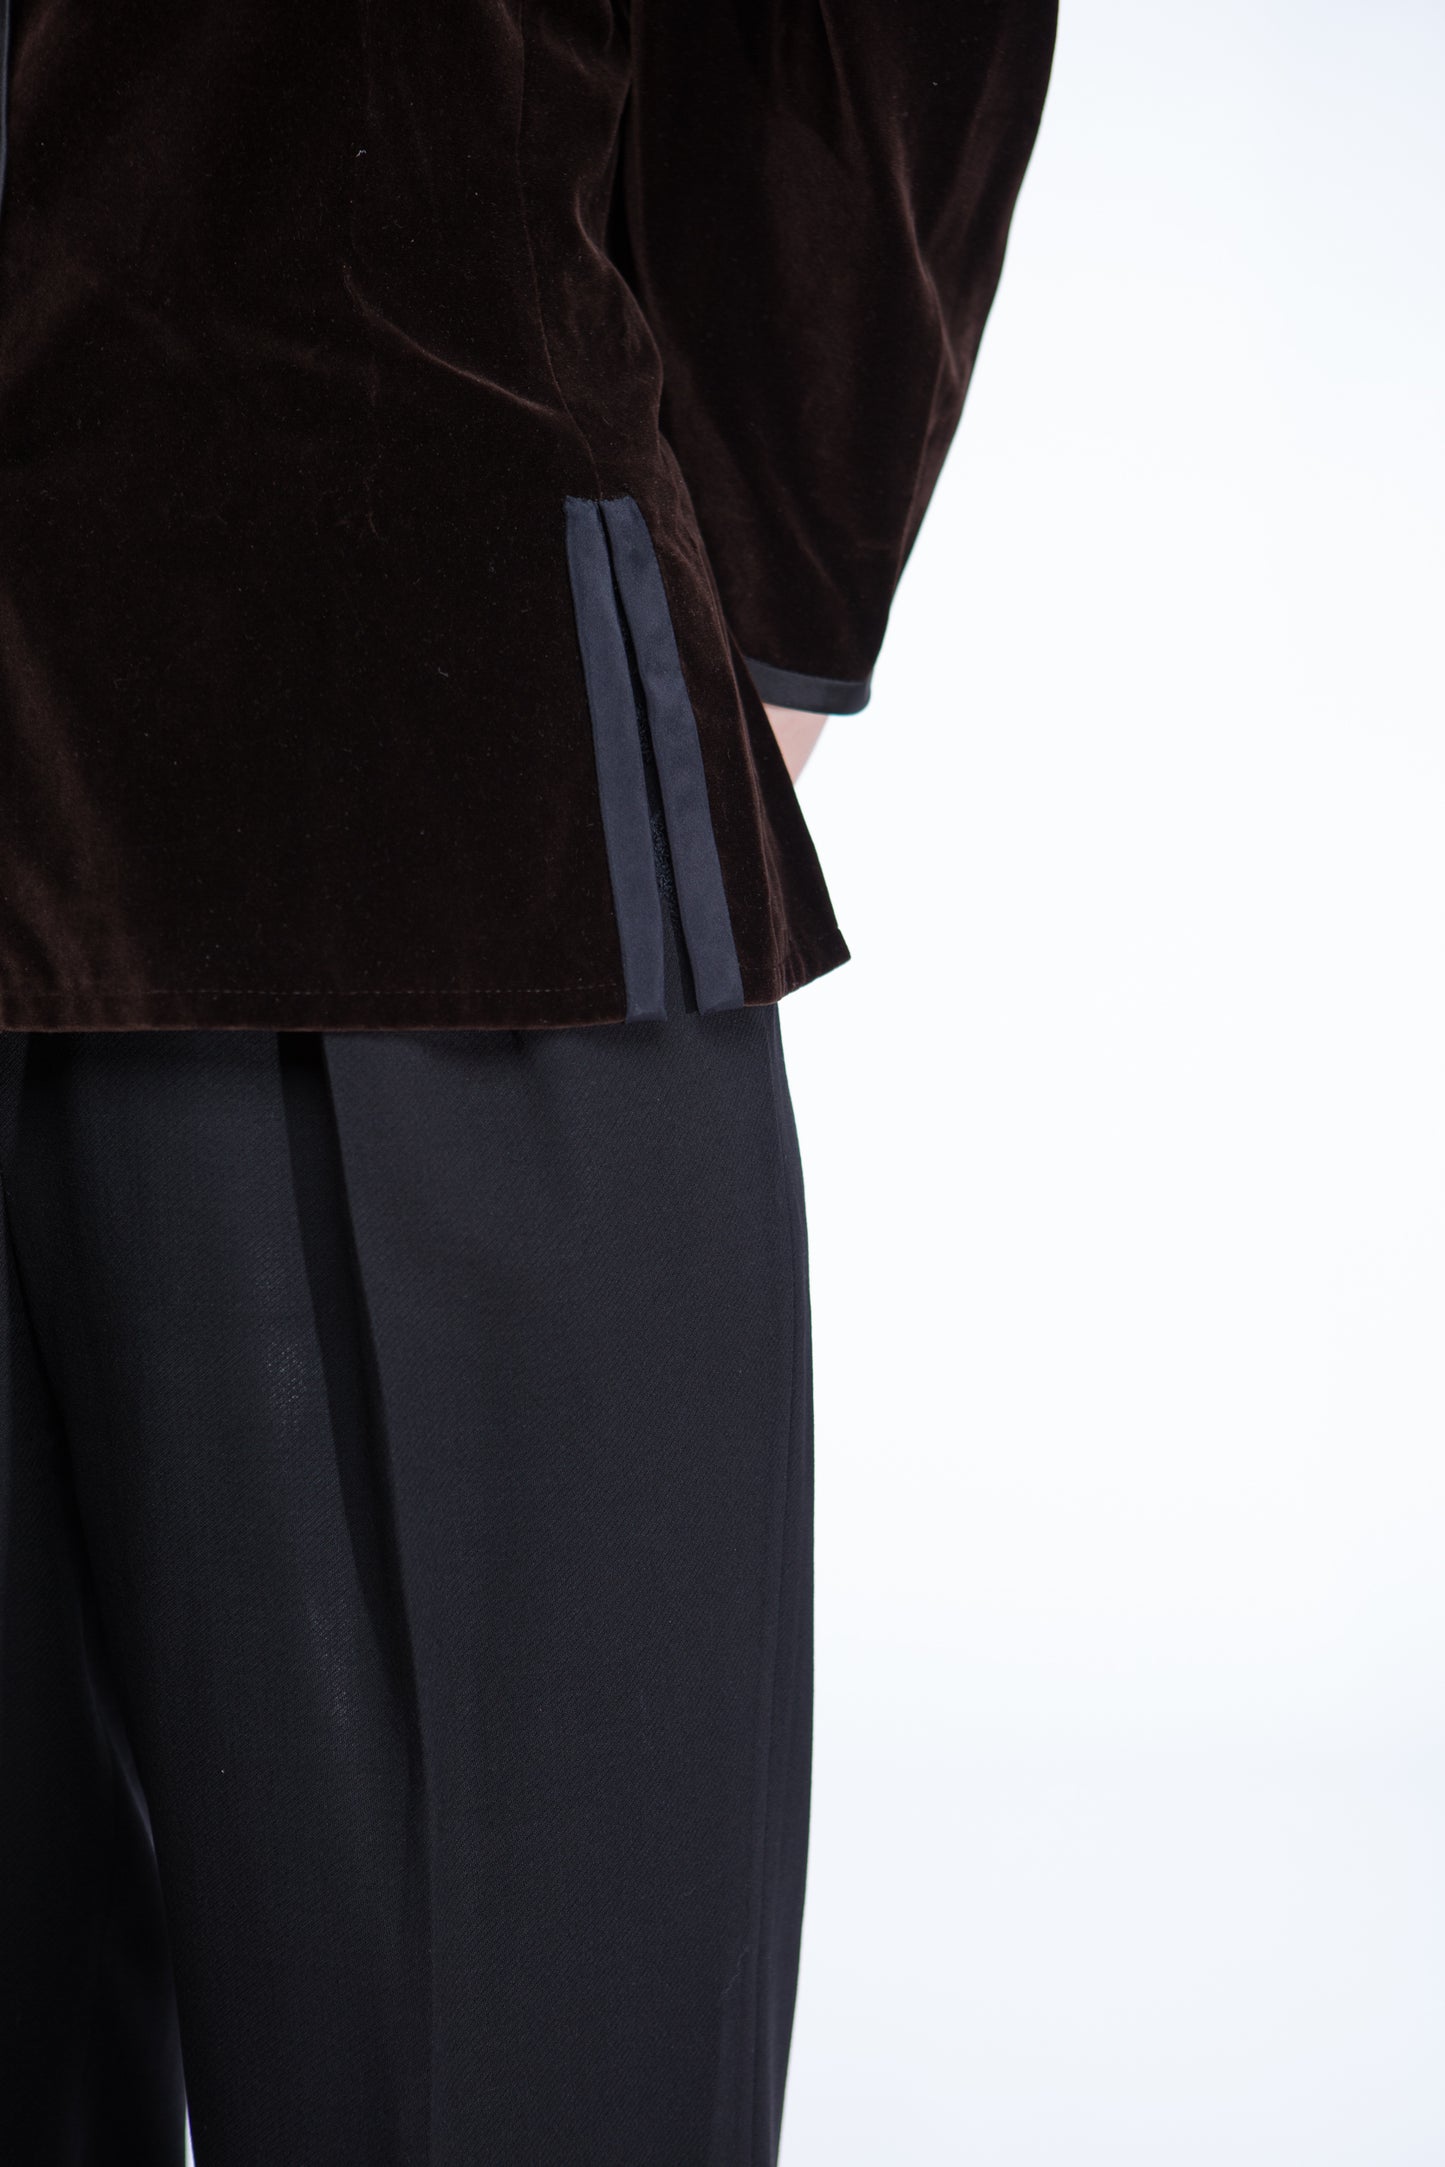 Yves Saint Laurent brown velvet jacket